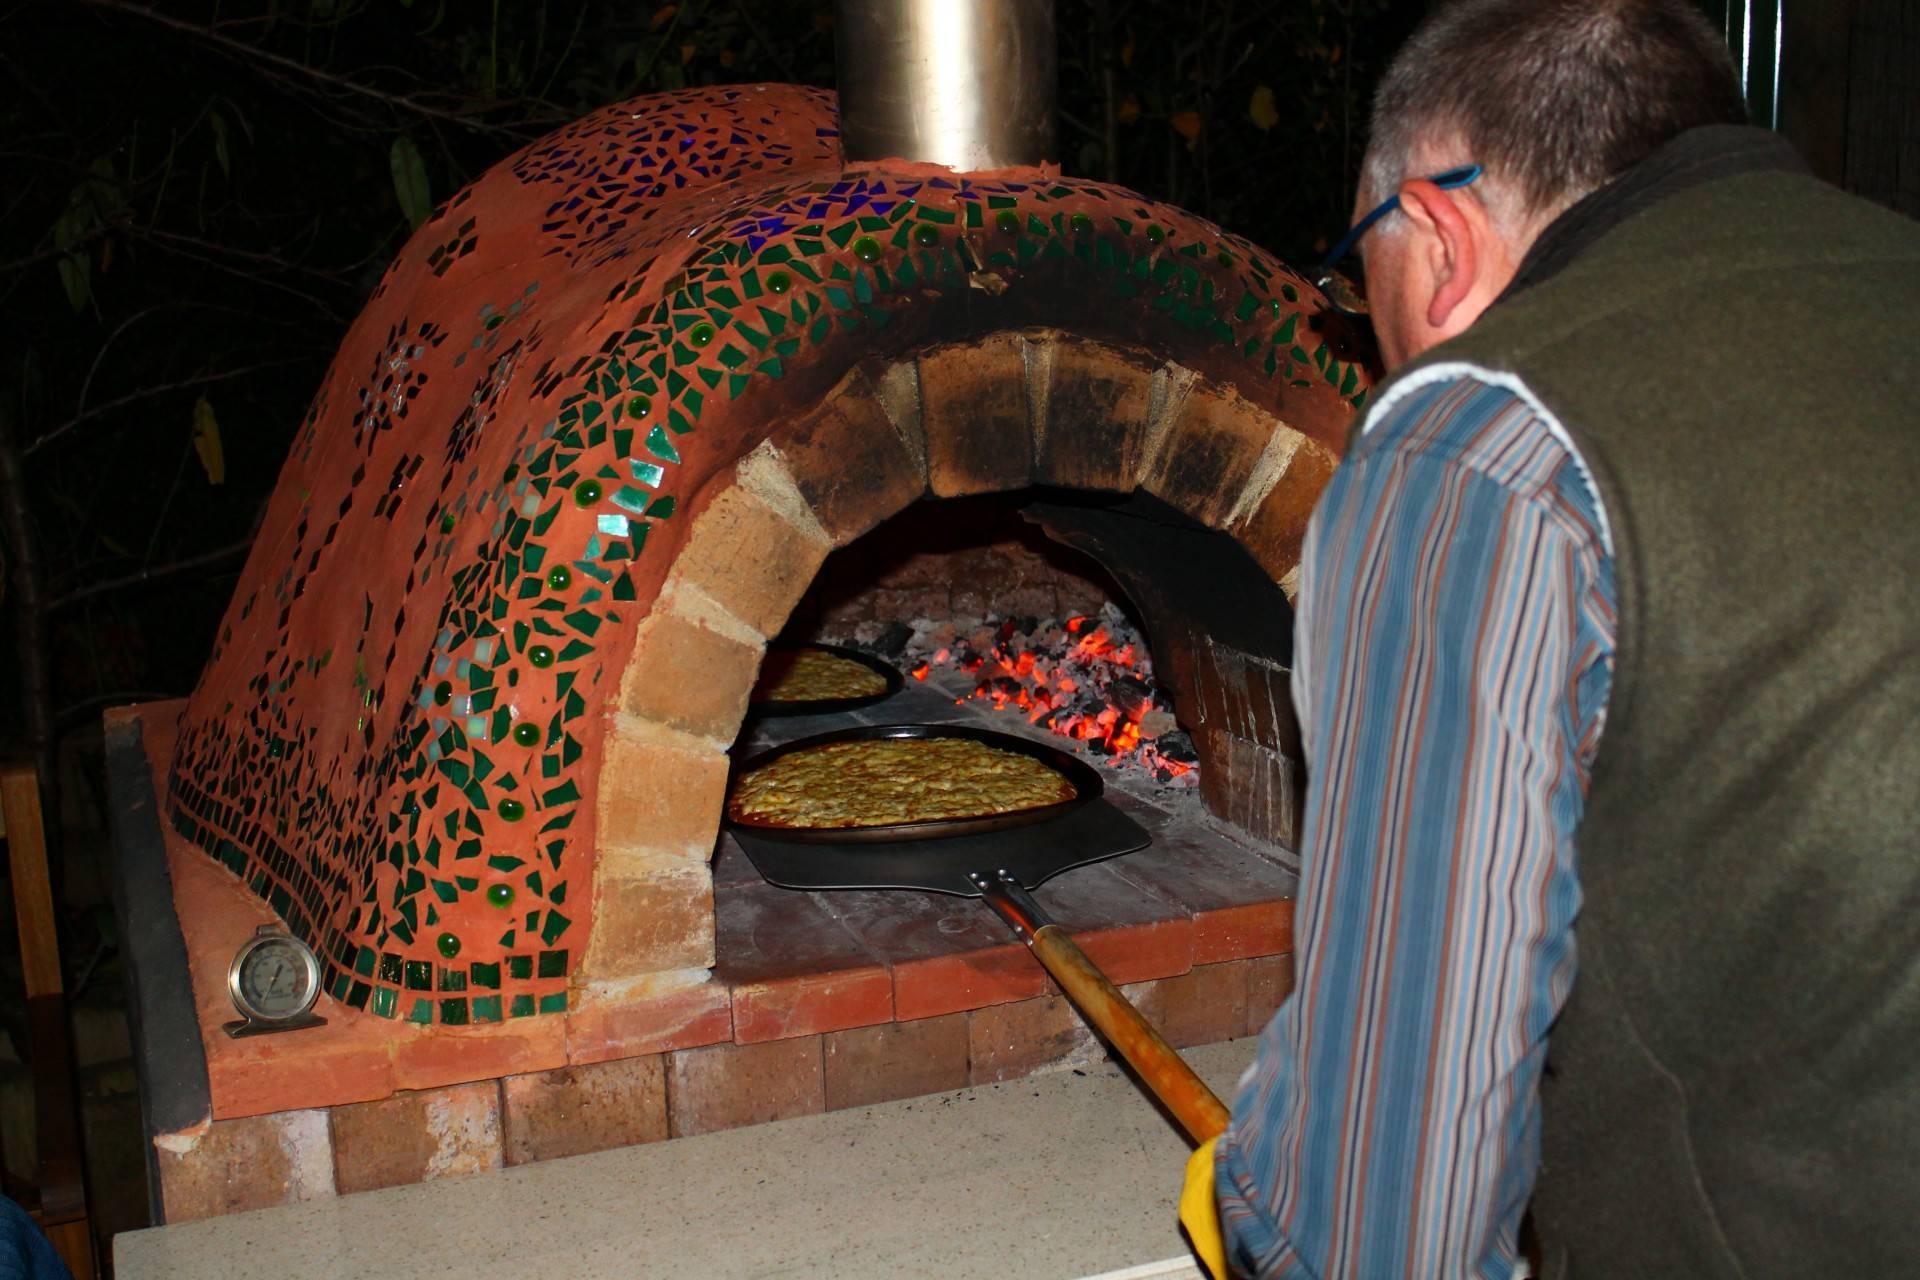 Печь для пиццы на дровах своими руками из кирпича